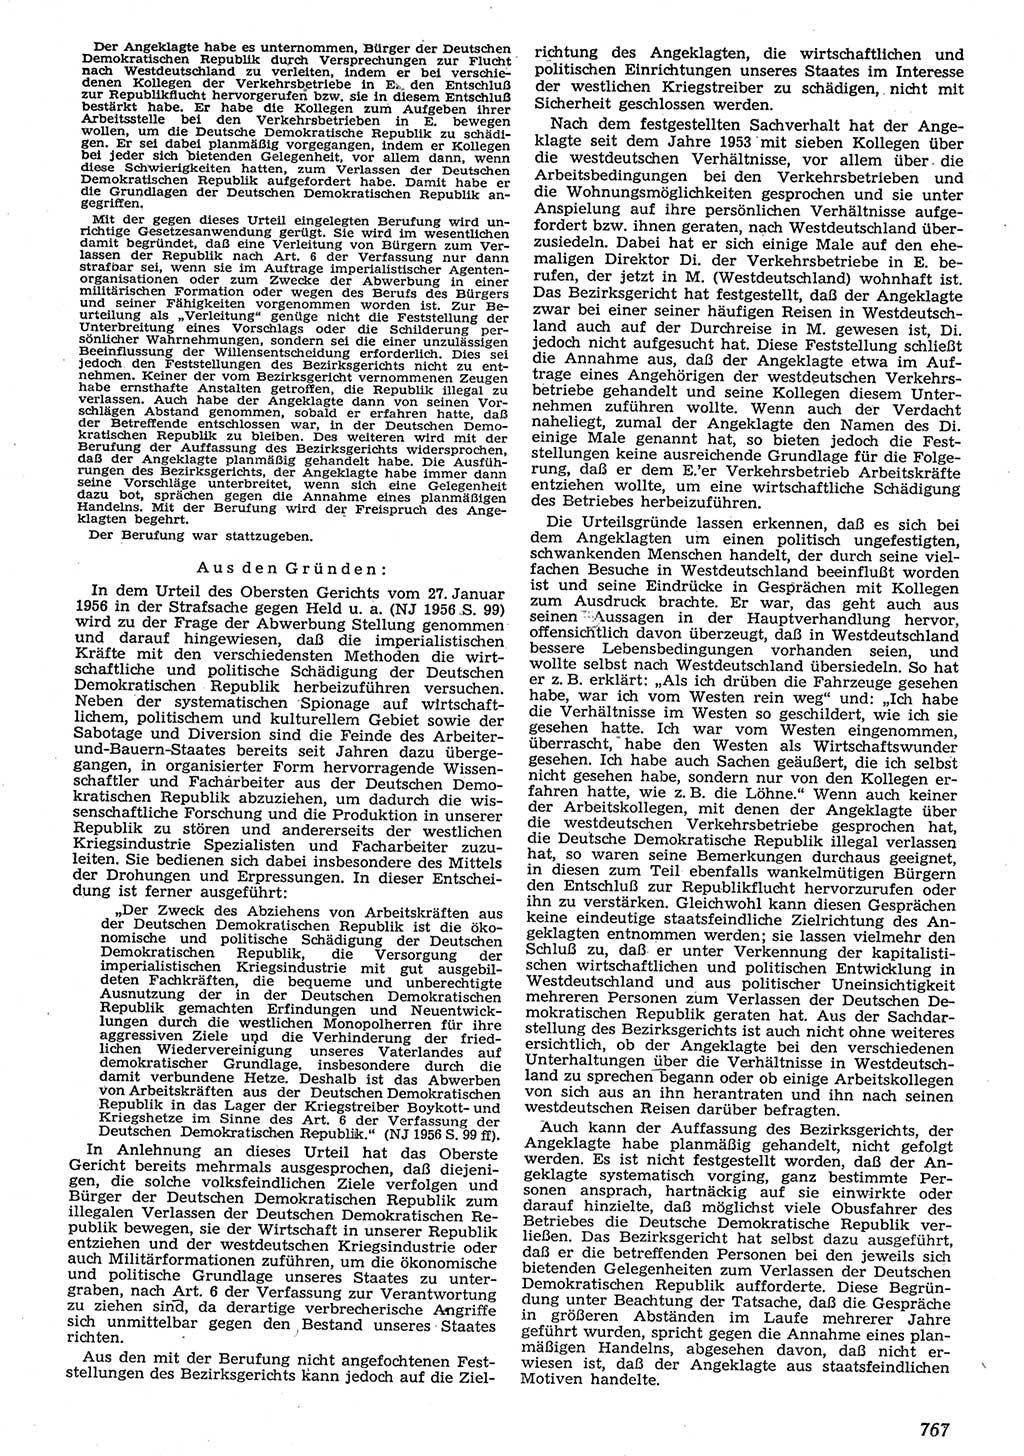 Neue Justiz (NJ), Zeitschrift für Recht und Rechtswissenschaft [Deutsche Demokratische Republik (DDR)], 10. Jahrgang 1956, Seite 767 (NJ DDR 1956, S. 767)